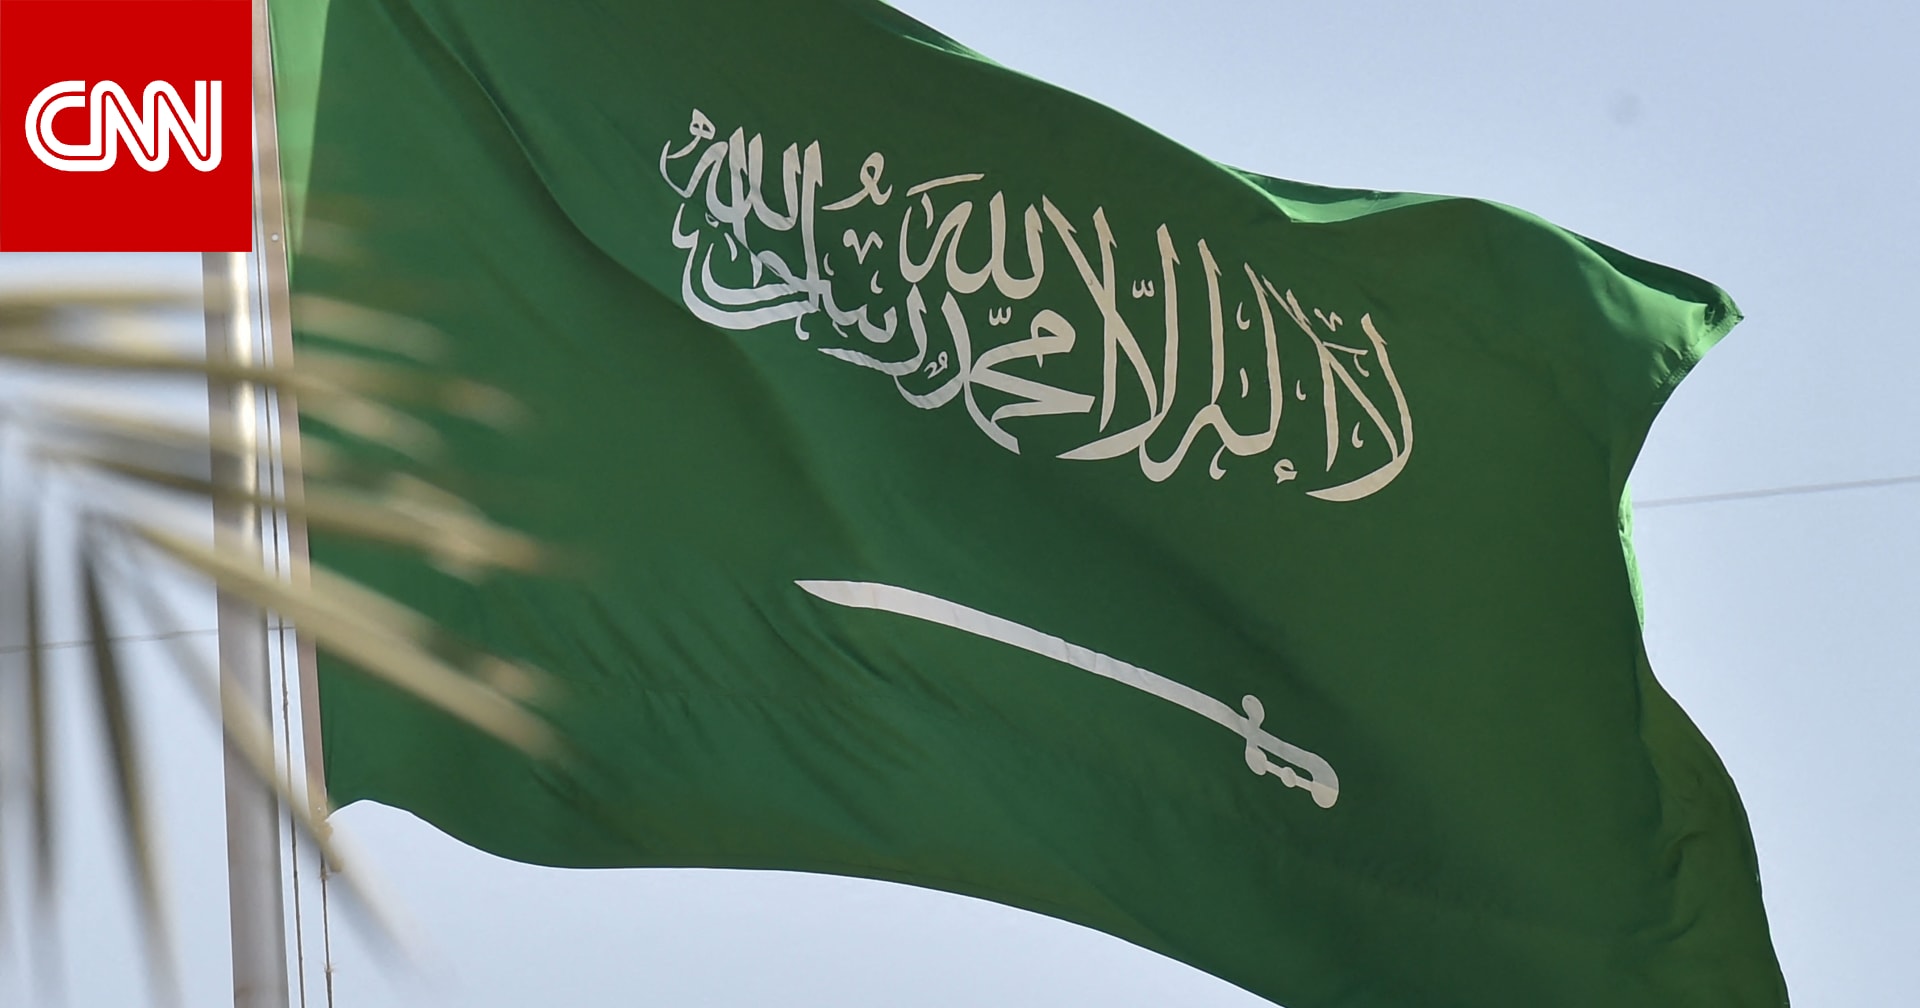 السعودية تترأس لجنة الأمم المتحدة المعنية بوضع المرأة رغم انتقادات منظمات حقوقية